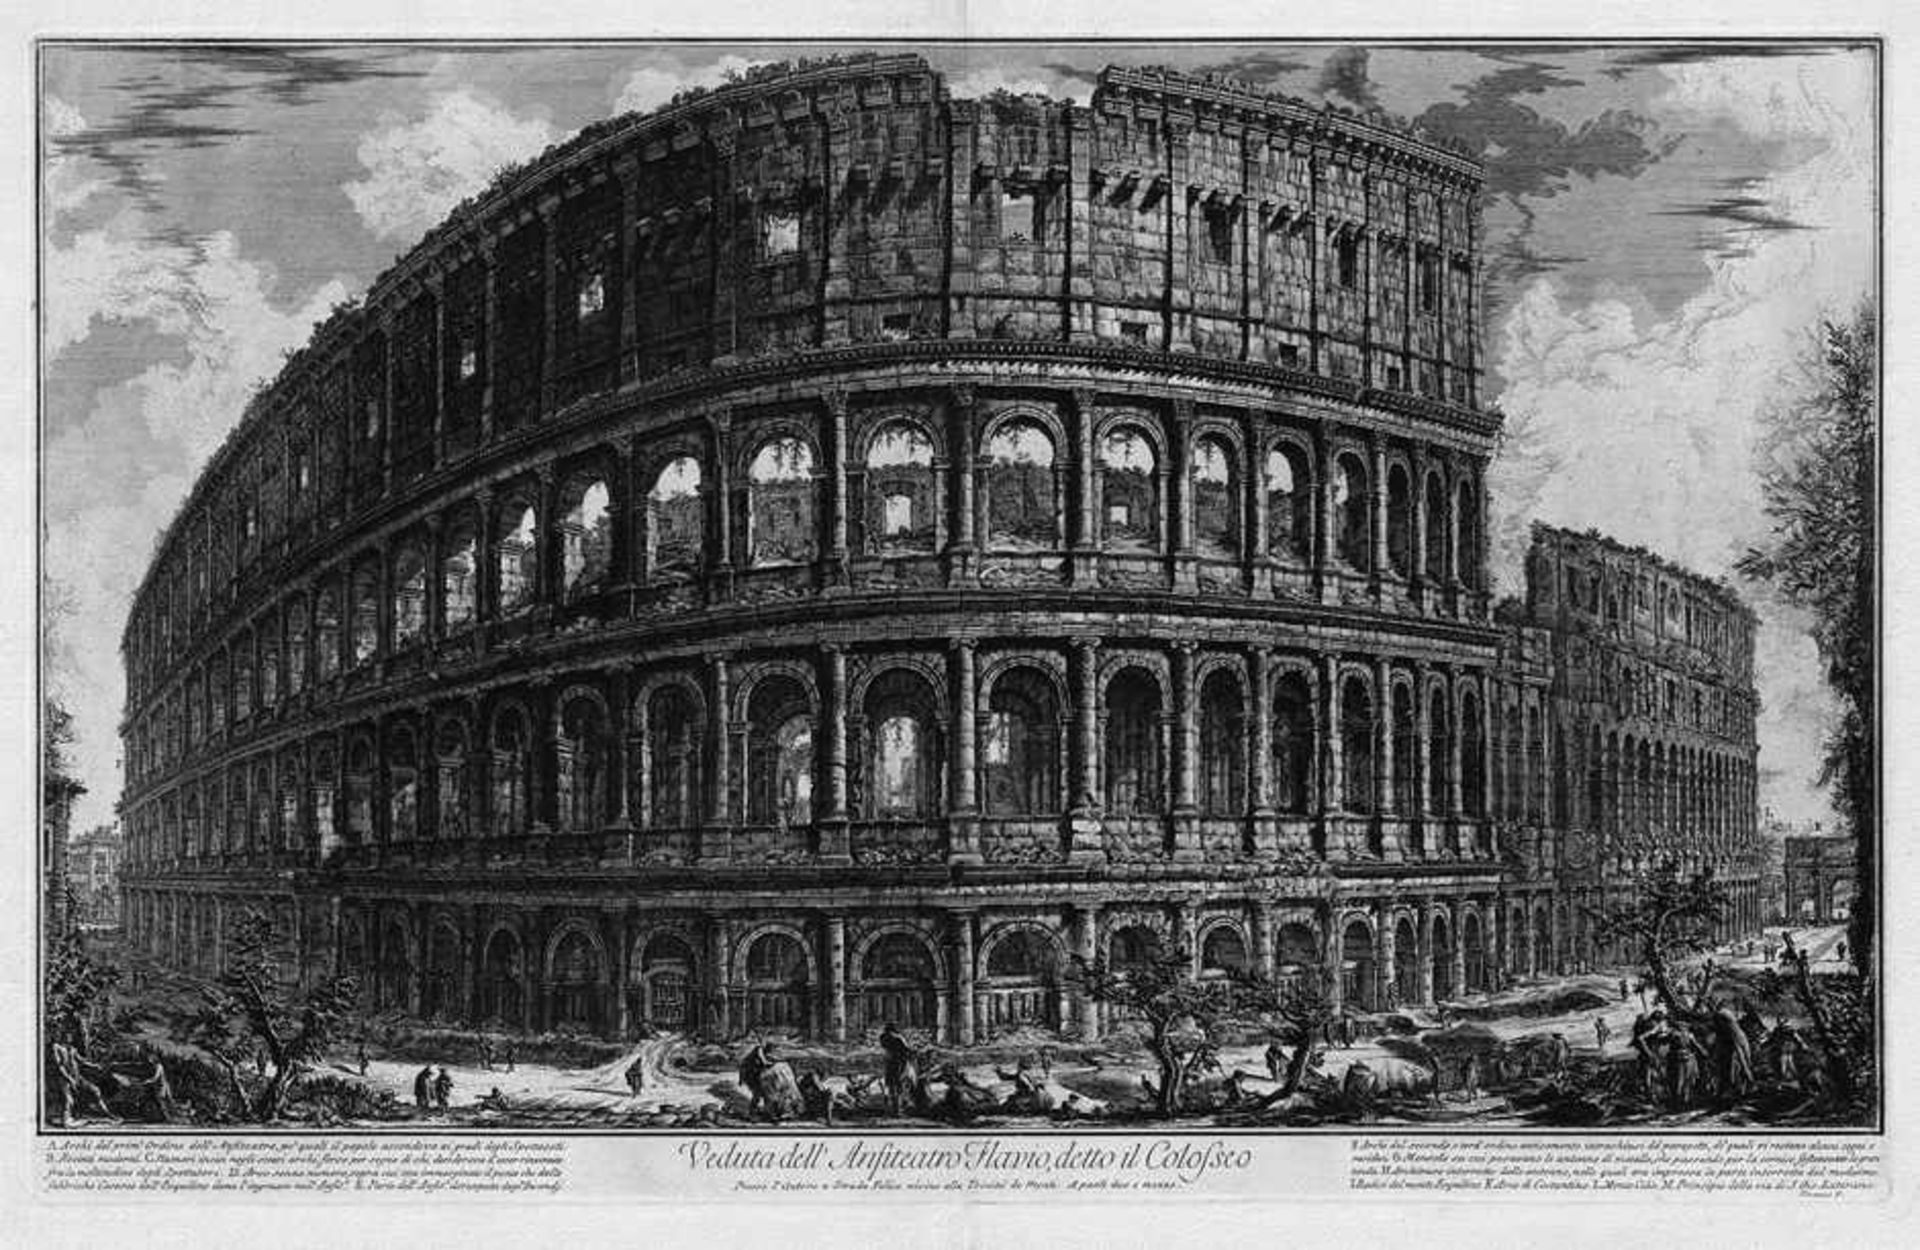 Piranesi, Giovanni Battista: Veduta dell'Anfiteatro Flavio, detto il Colosseo Veduta dell'Anfiteatro